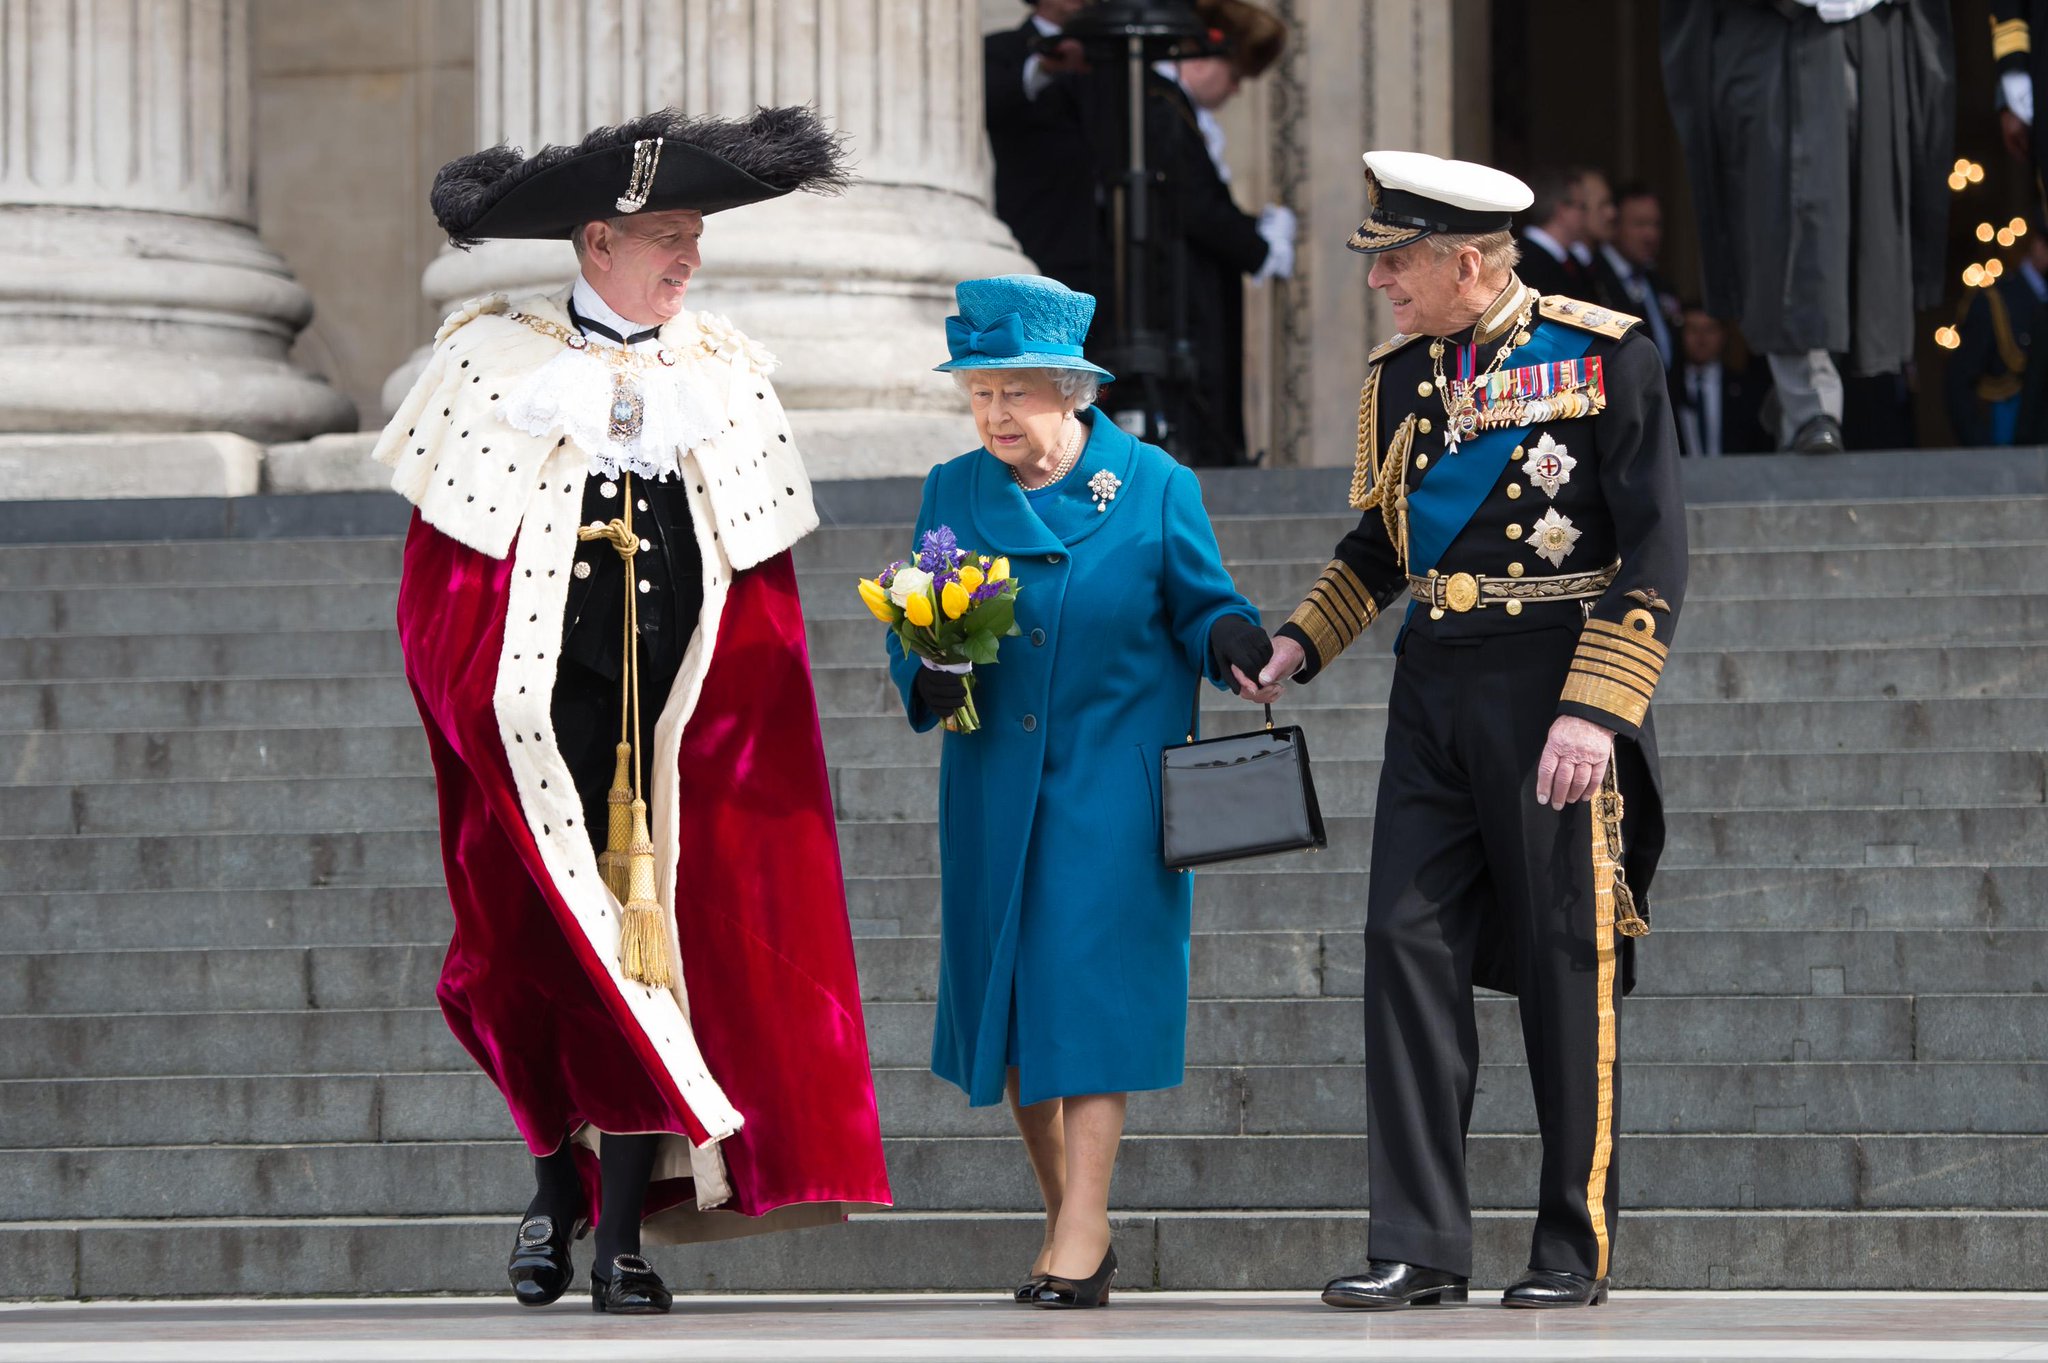 A very happy 94th birthday to HRH Prince Philip, Duke of Edinburgh. 